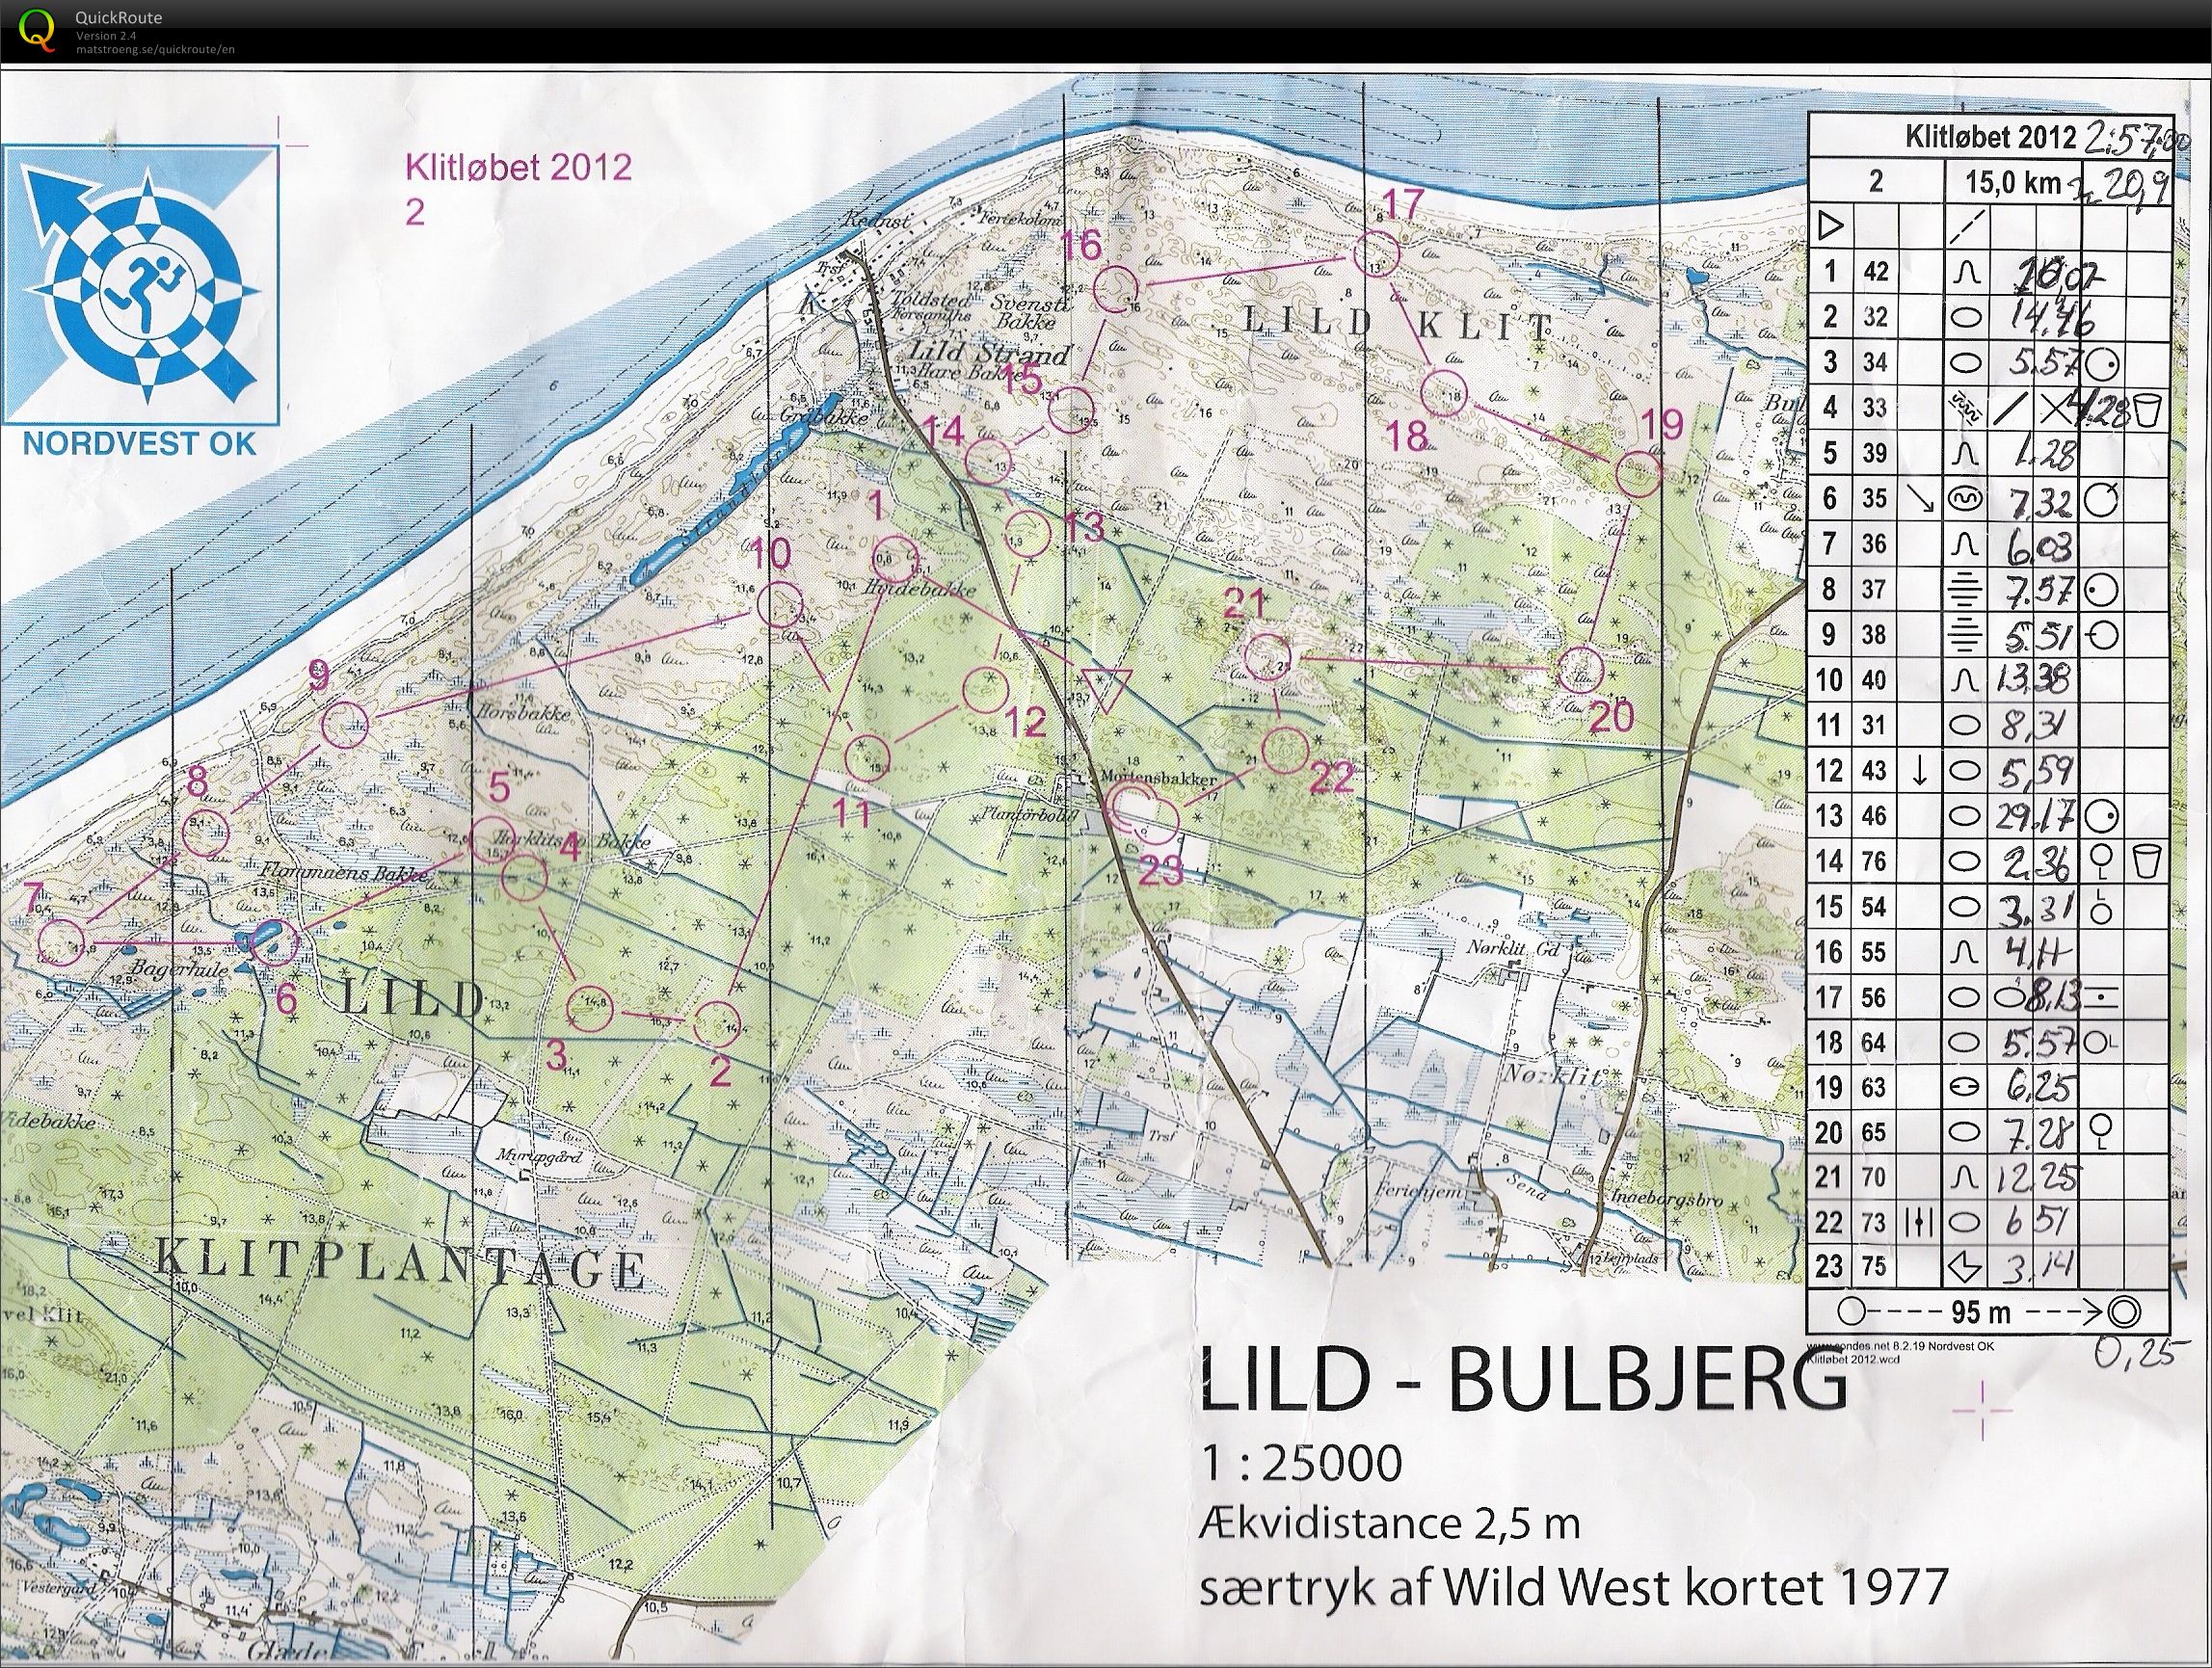 Klitløbet - Lild-Bulbjerg - 2012 (17.06.2012)